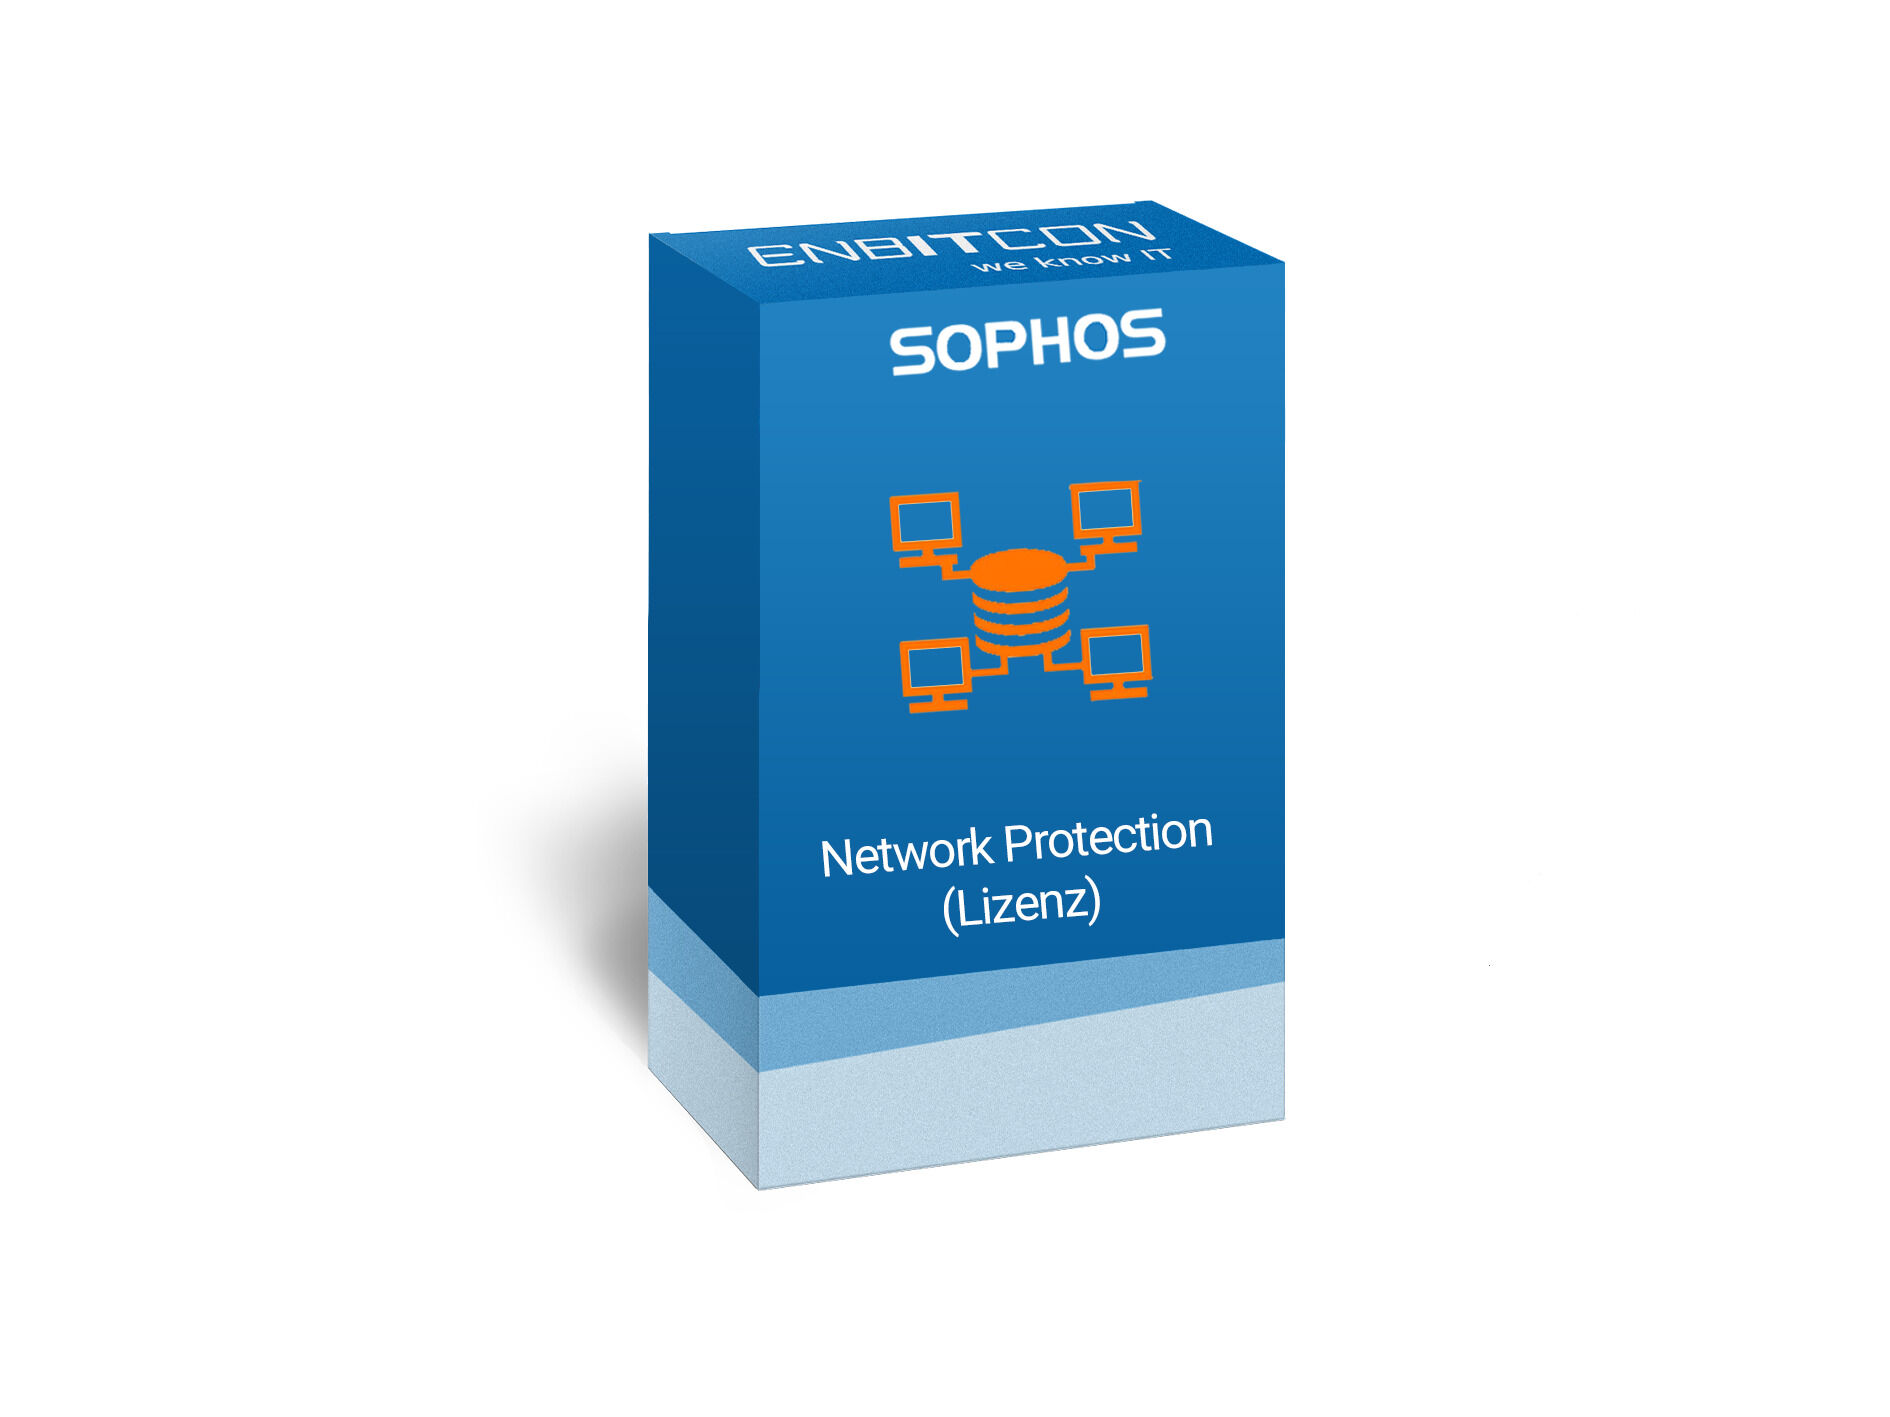 Sophos Network Protection Lizenz Vorschaubild bestehend aus einem blauen Schild, indem sich ein Computernetz befindet